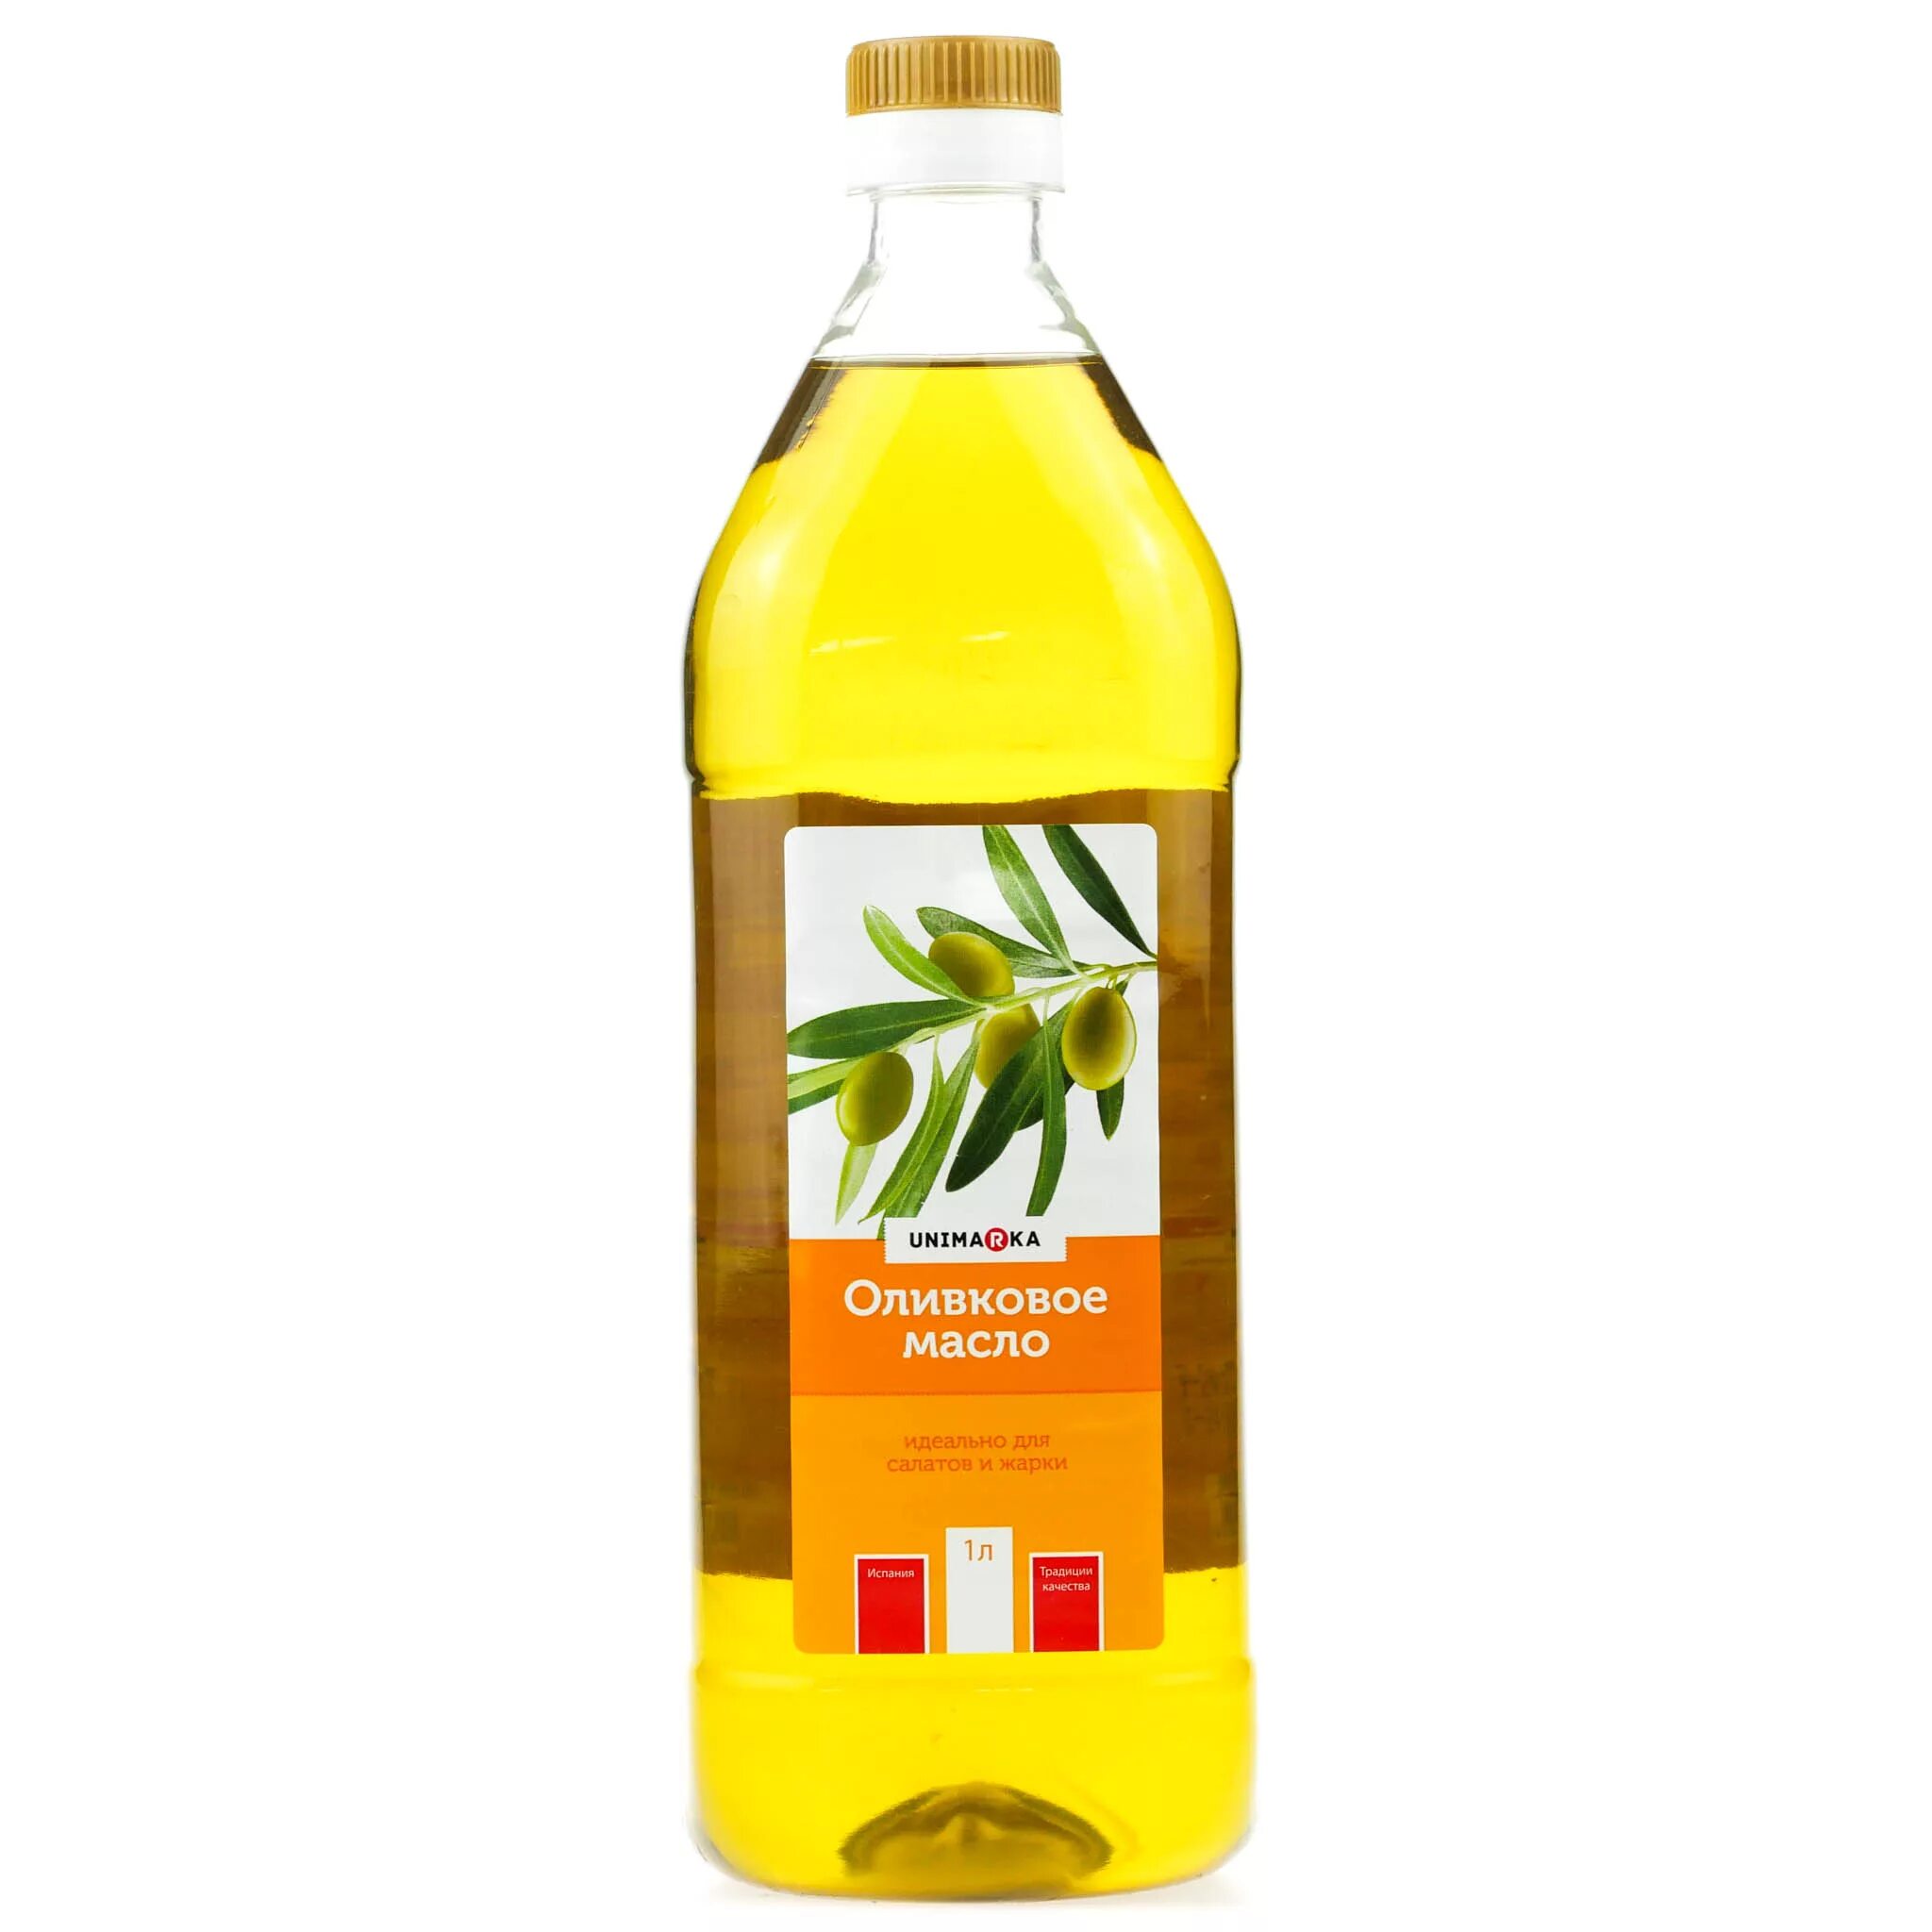 Оливковое масло botanika 1 л рафинированное. Оливковое масло рафинированное и нерафинированное. Масло рапсовое нерафинированное. Рафинированное масло оливковое для салата.